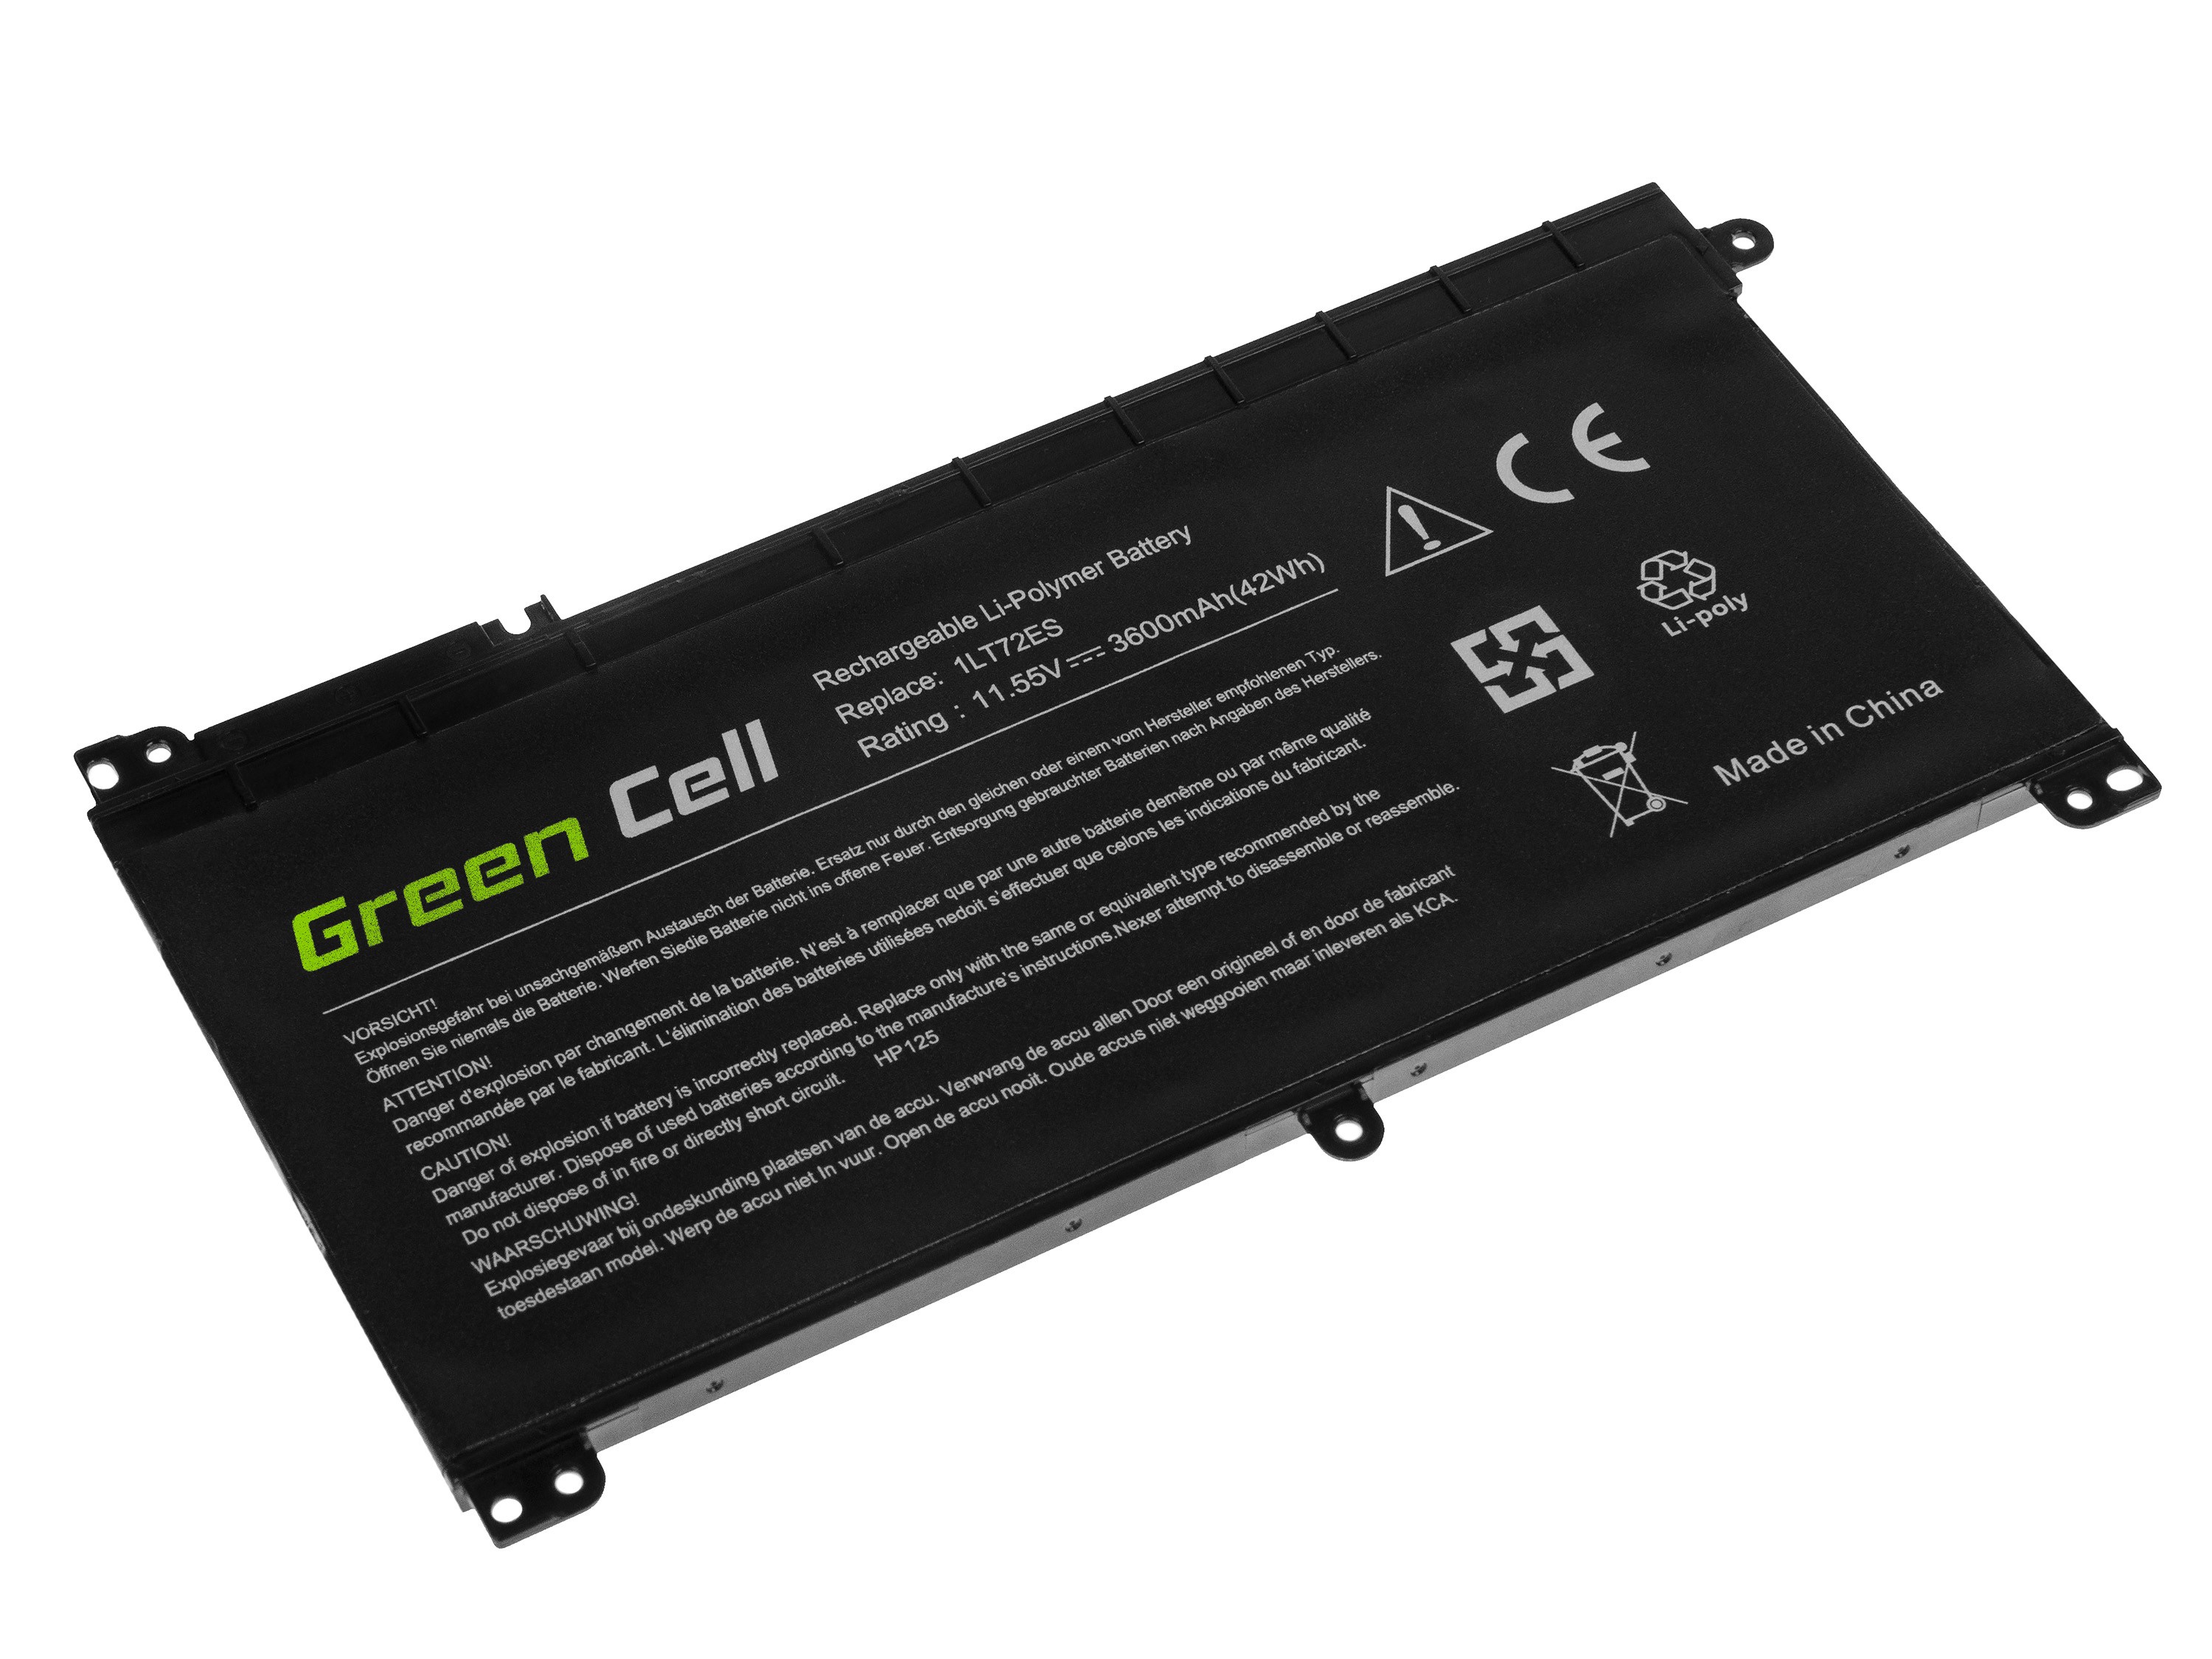 Groene cel batterij - HP Omen 15, Pavilion x360, Stream 14 - 3600mAh